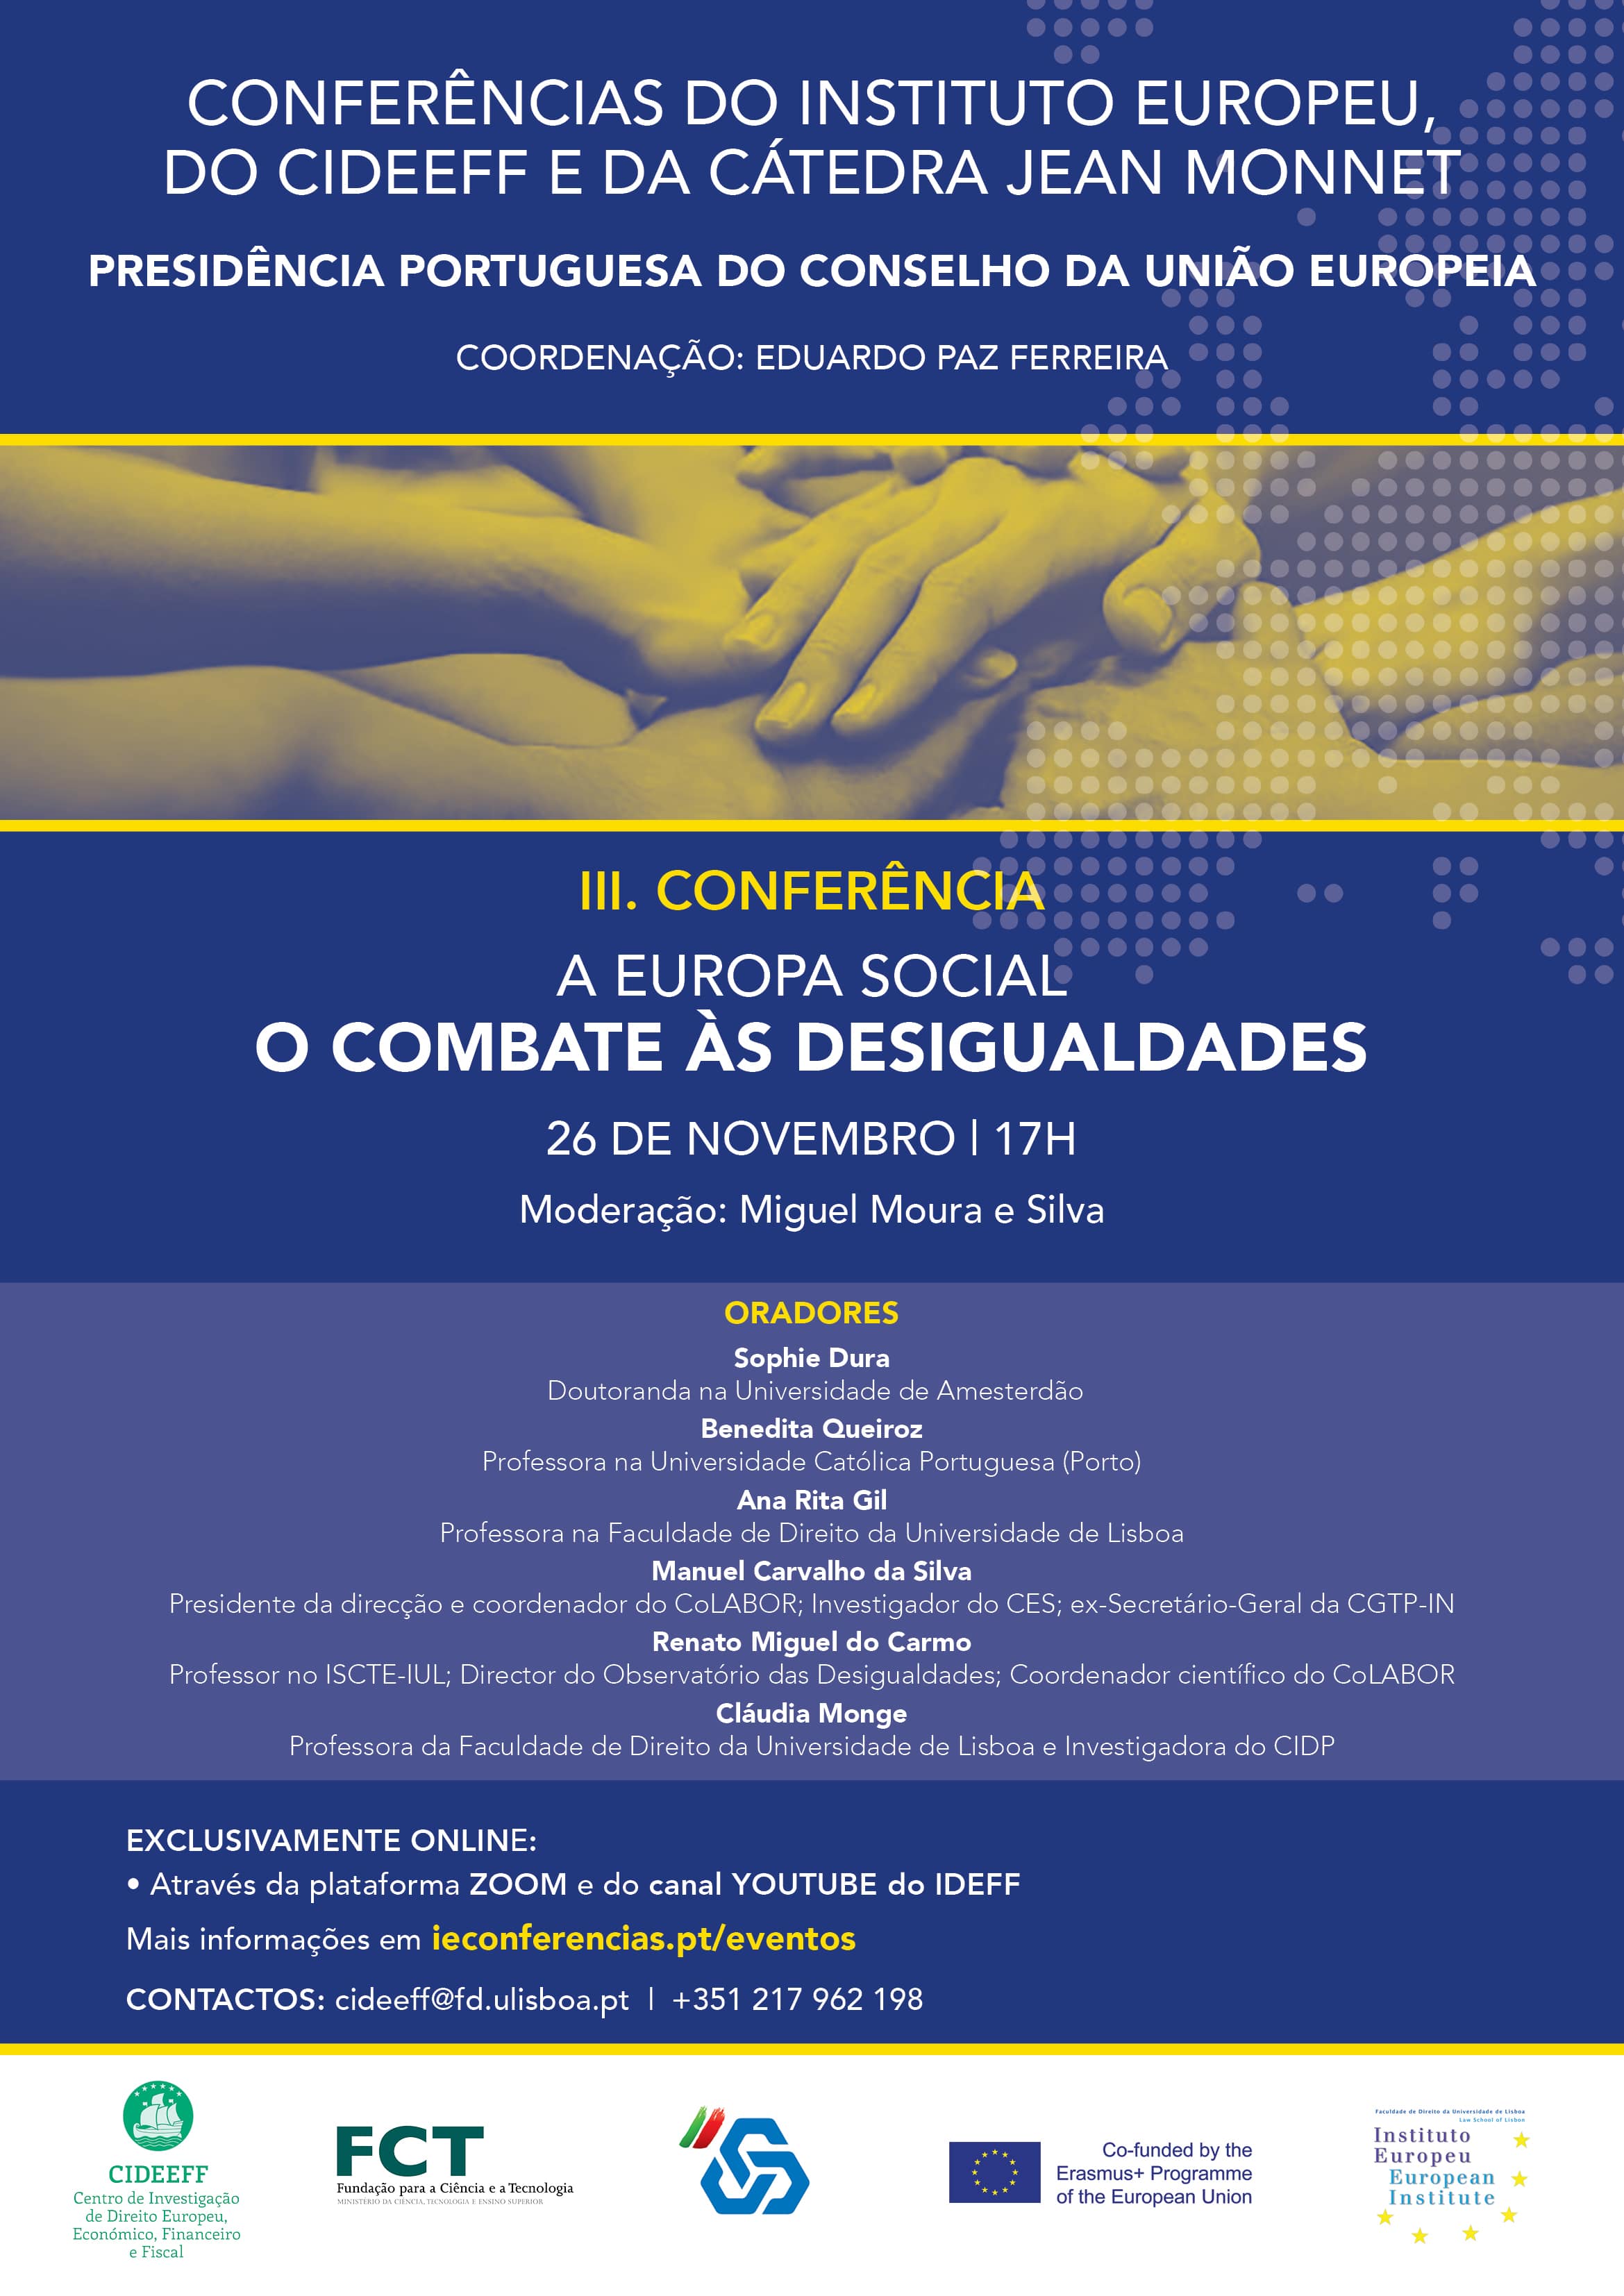 Poster Conferencias InstEuropeu CIDEEFF IIIConferencia min